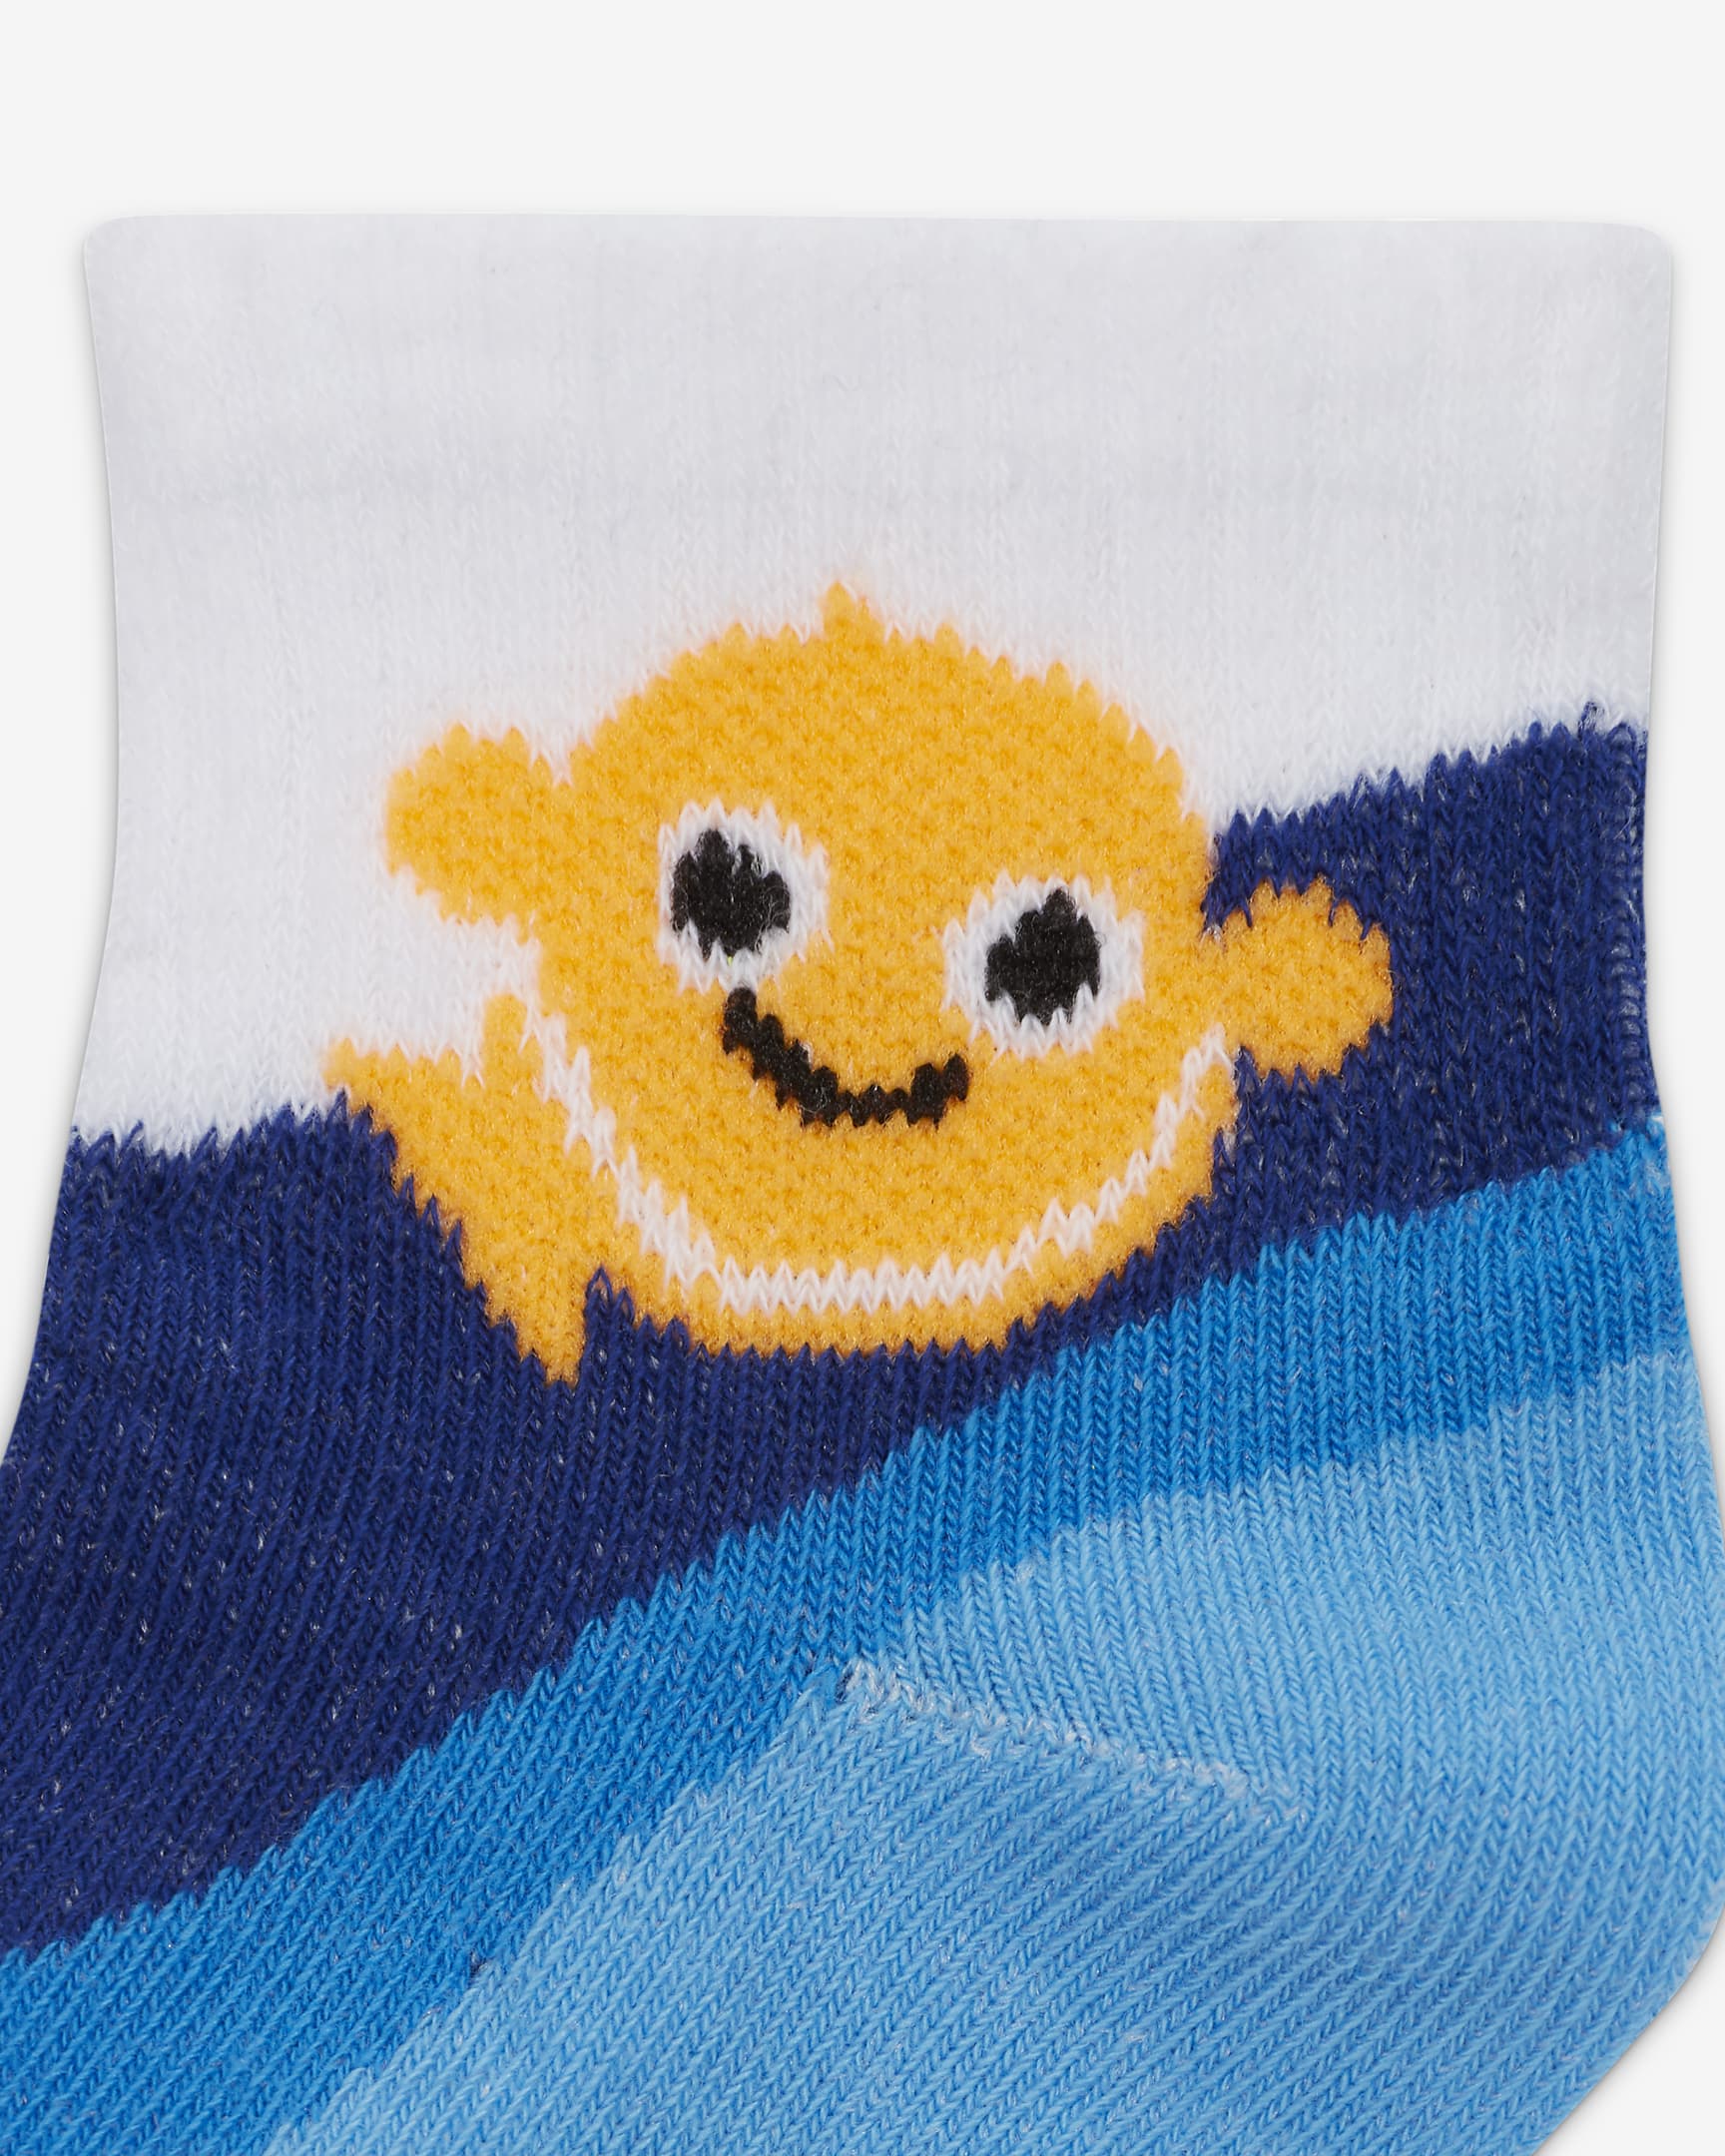 Nike Coral Reef Infant Socks (6 Pairs) Baby Socks. Nike JP